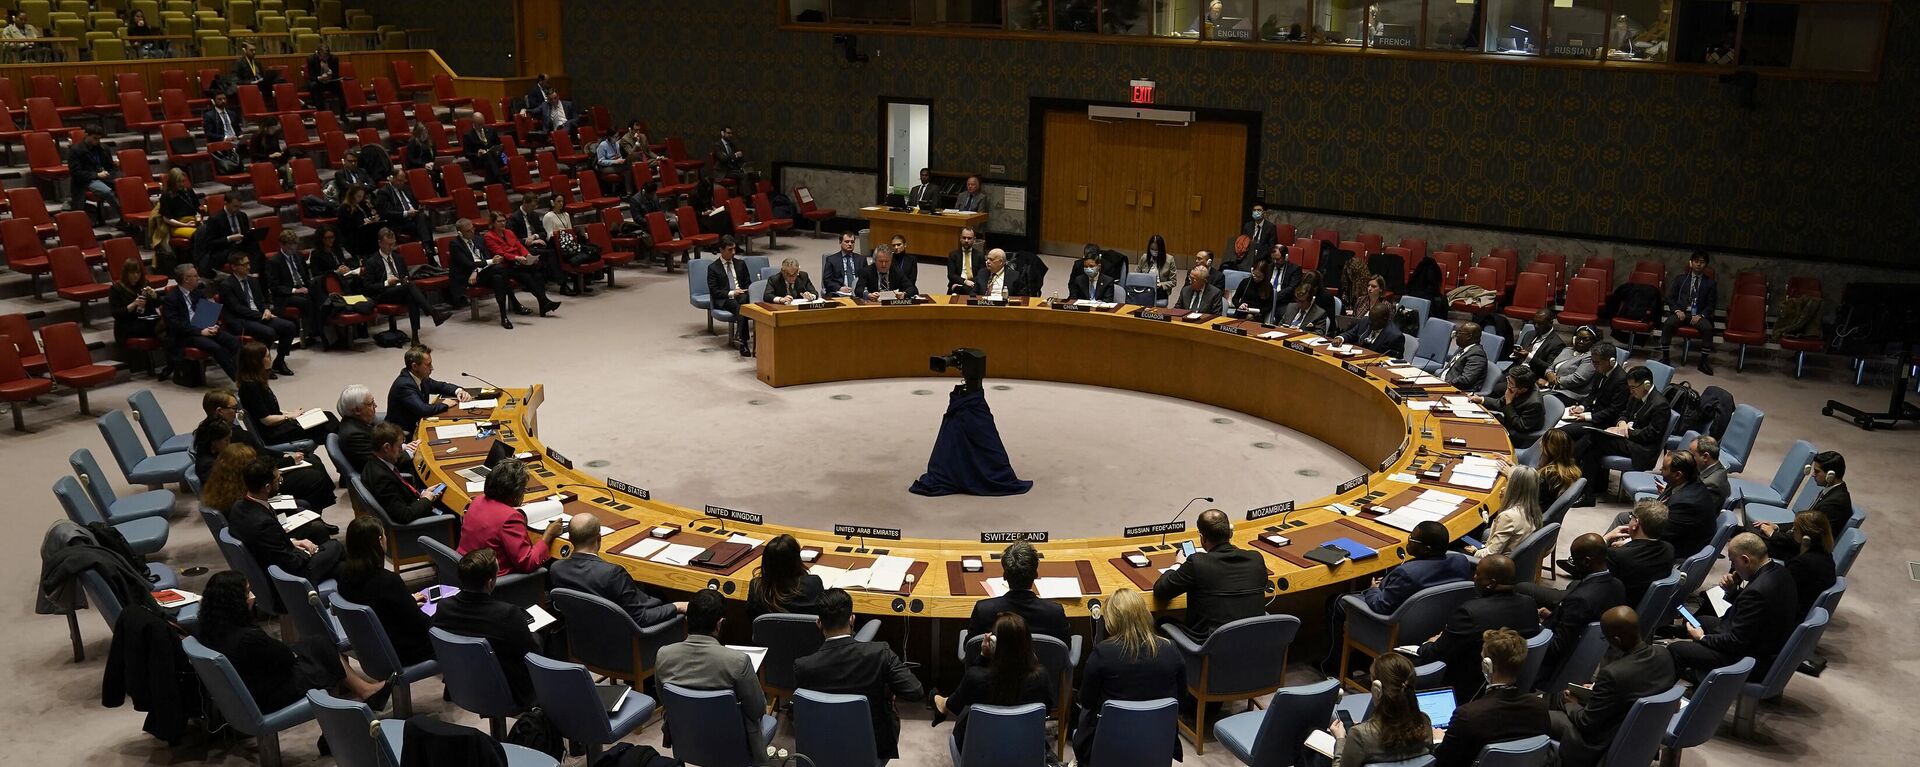 Vista general de una reunión del Consejo de Seguridad de las Naciones Unidas, el 6 de febrero de 2023 - Sputnik Mundo, 1920, 27.02.2023